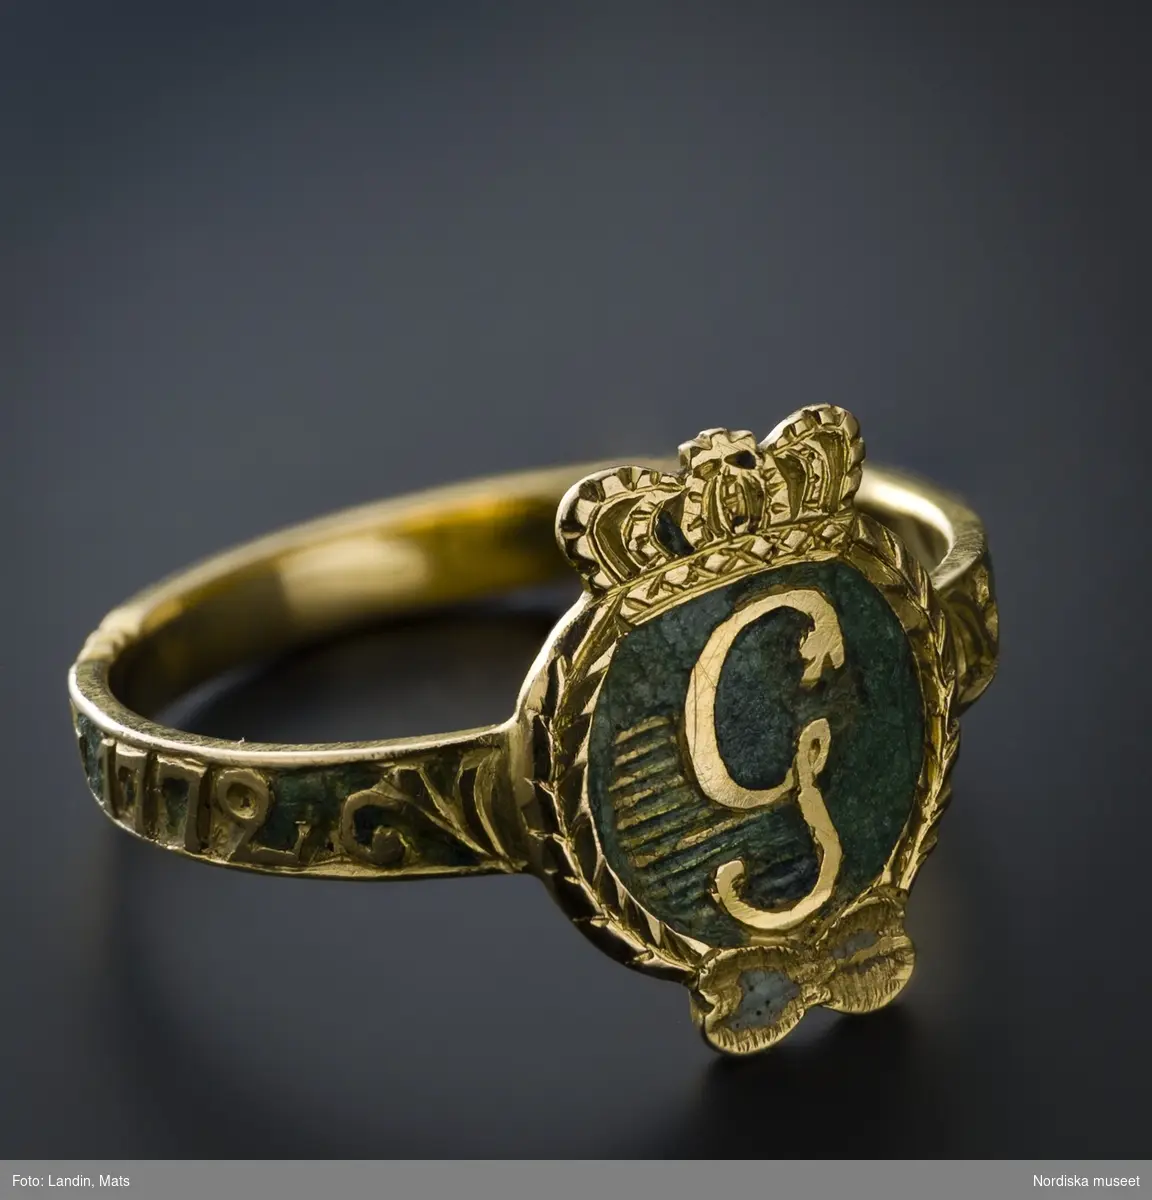 Ring av rött guld,  med Gustav III:s monogram i guld mot grön emaljbotten, s.k. revolutionsring. Runt skenan graverad inskription "den 19 aug 1772". 
/Ingrid Roos 2006-09-26